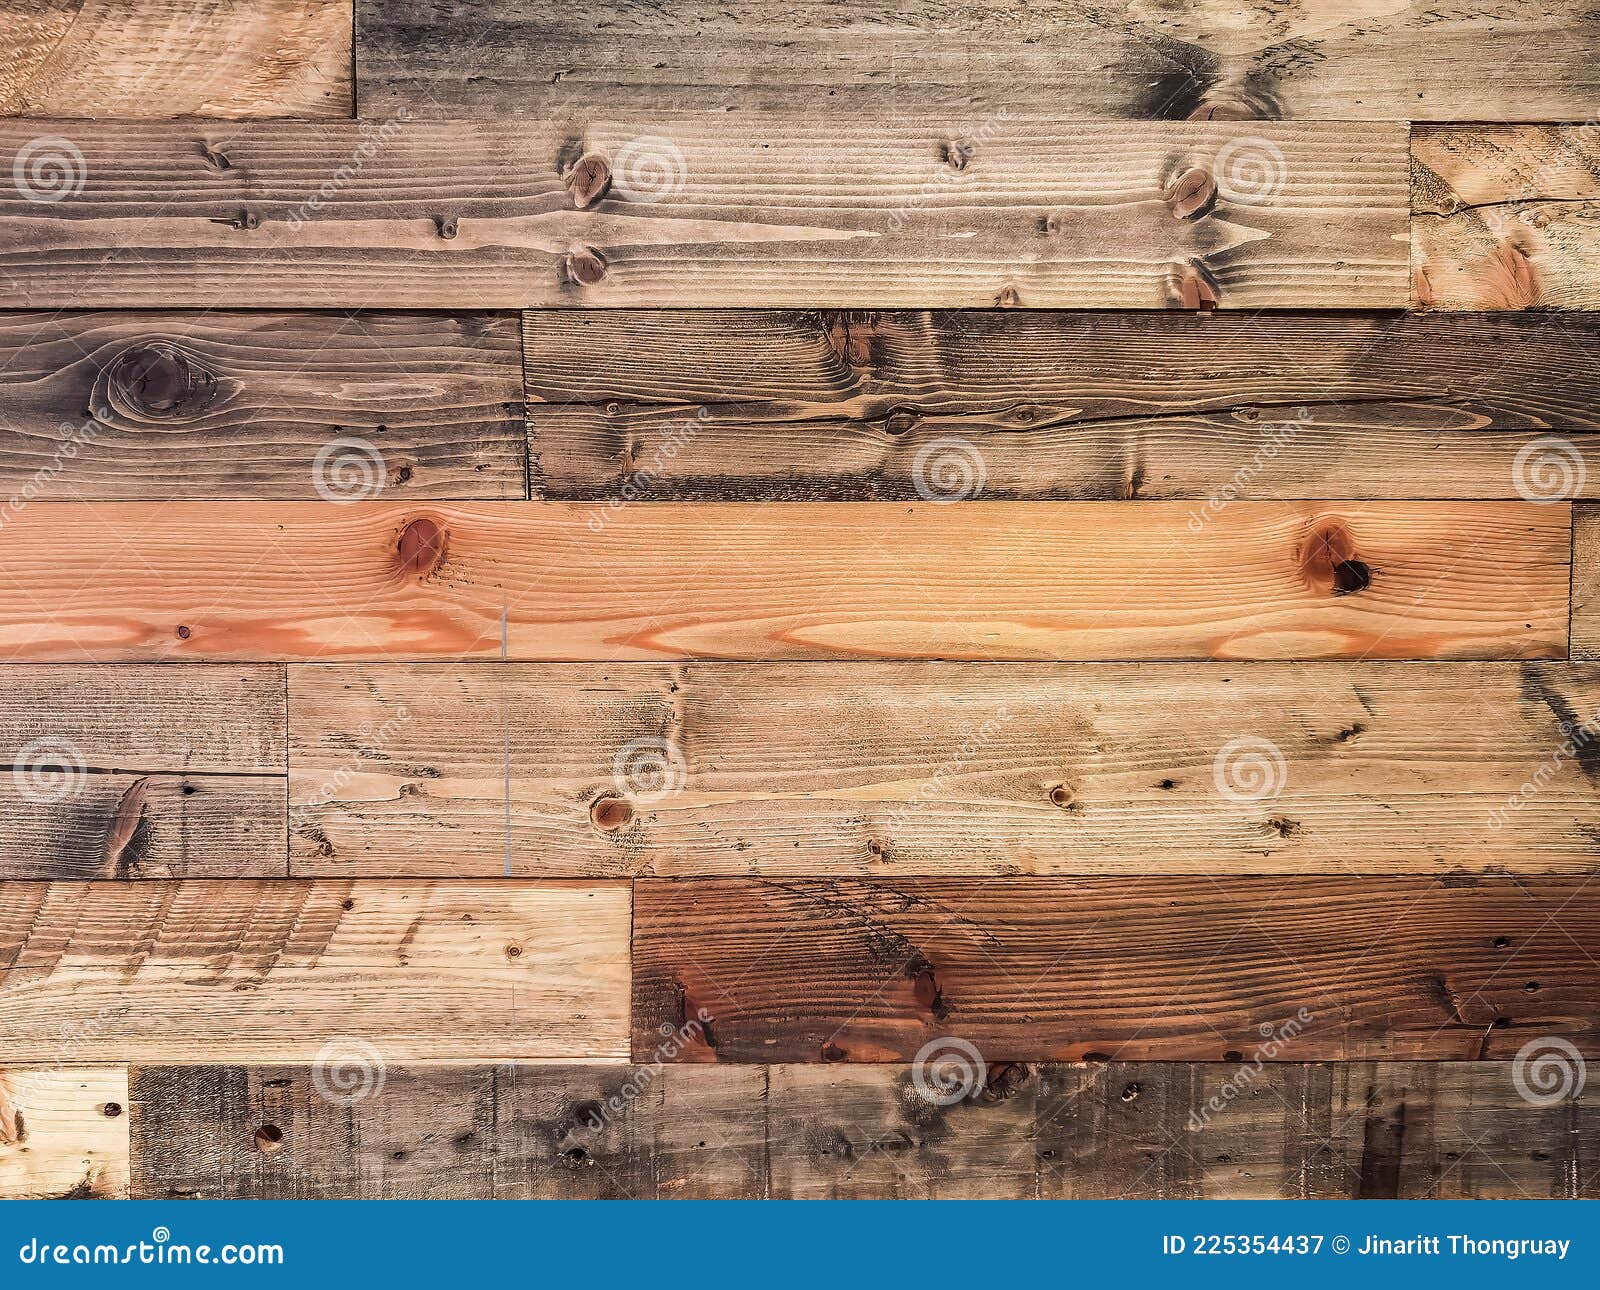 Bề mặt gỗ xưa cũ có thể mang lại cho cuộc sống của bạn một phong cách trang trí độc đáo và đầy tính thẩm mỹ. Những tấm gỗ xưa được chế tác tỉ mỉ và sáng tạo, tạo ra những sản phẩm chất lượng cao và độc đáo. Sử dụng những tấm gỗ xưa này để trang trí tường nhà, làm nên những tấm tranh cổ điển hay tạo nên những sản phẩm trang trí đẹp mắt.